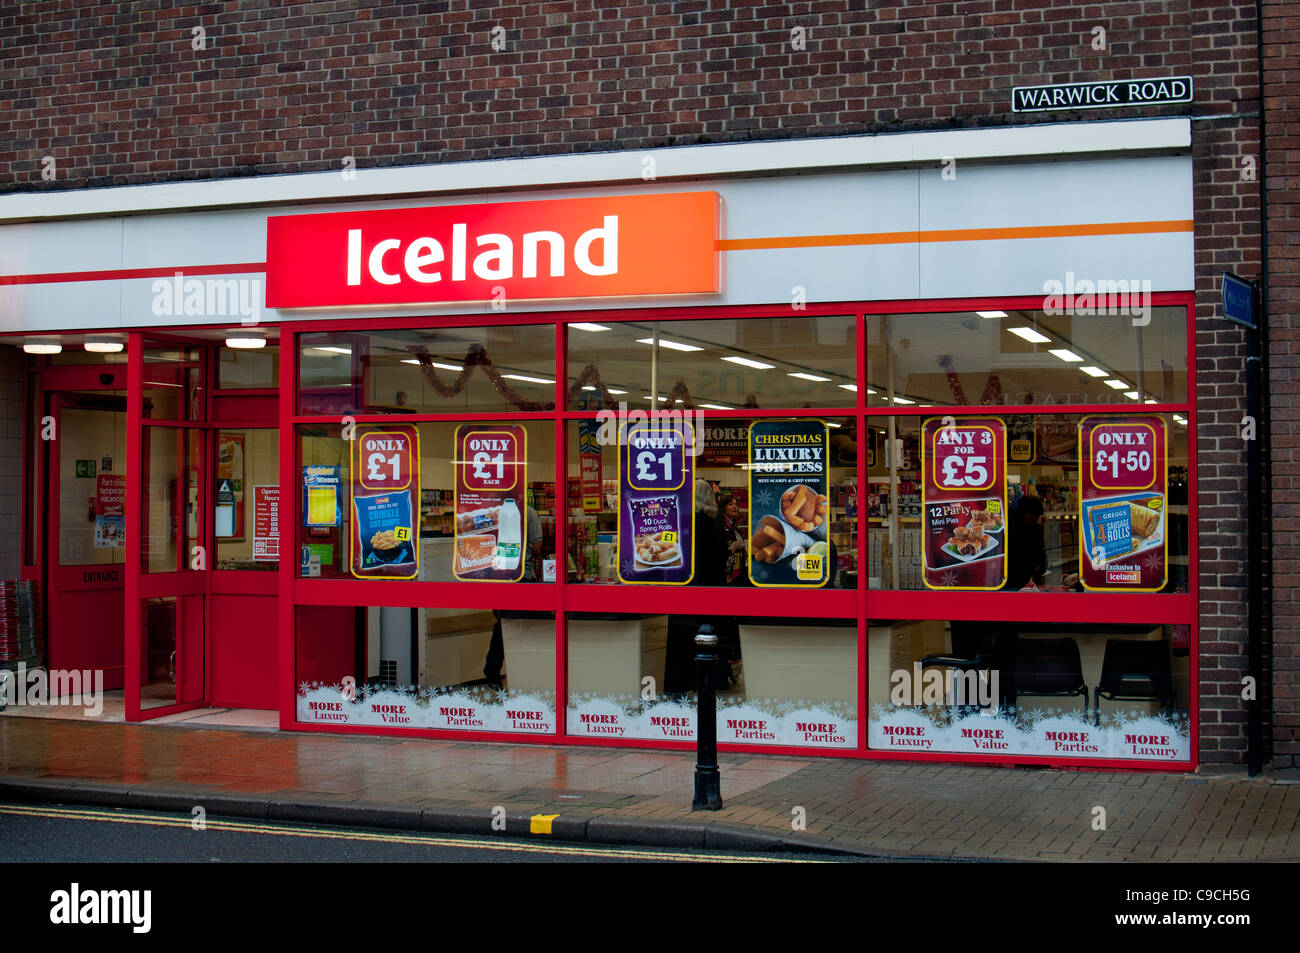 Iceland freezer centre, Kenilworth, England, UK Stock Photo - Alamy